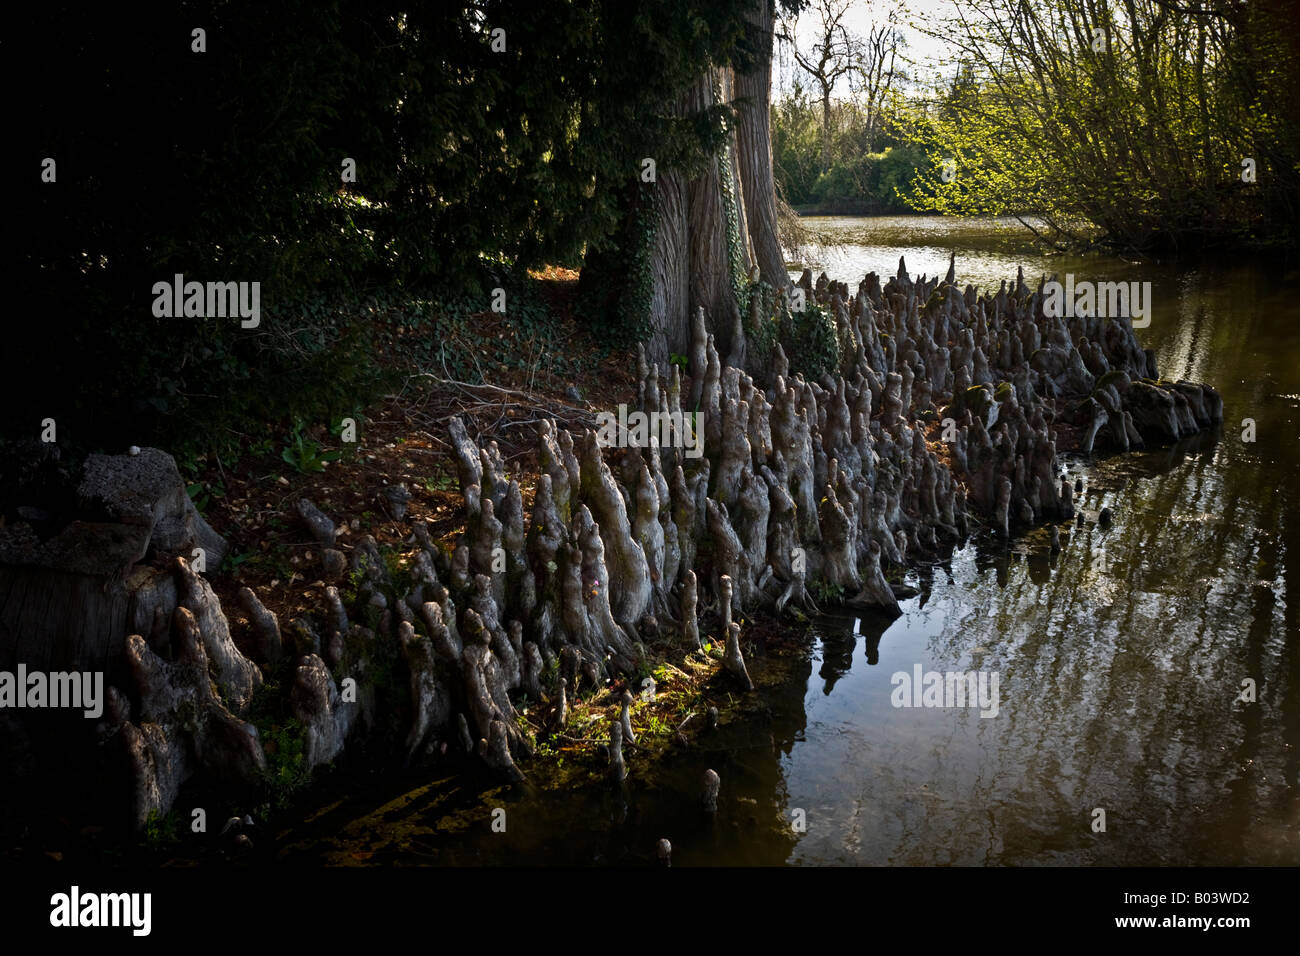 Bald cypress pneumatophores (Taxodium ascendens) by a river bank. Pneumatophores de Cyprès chauve au bord d'une rivière (France) Stock Photo